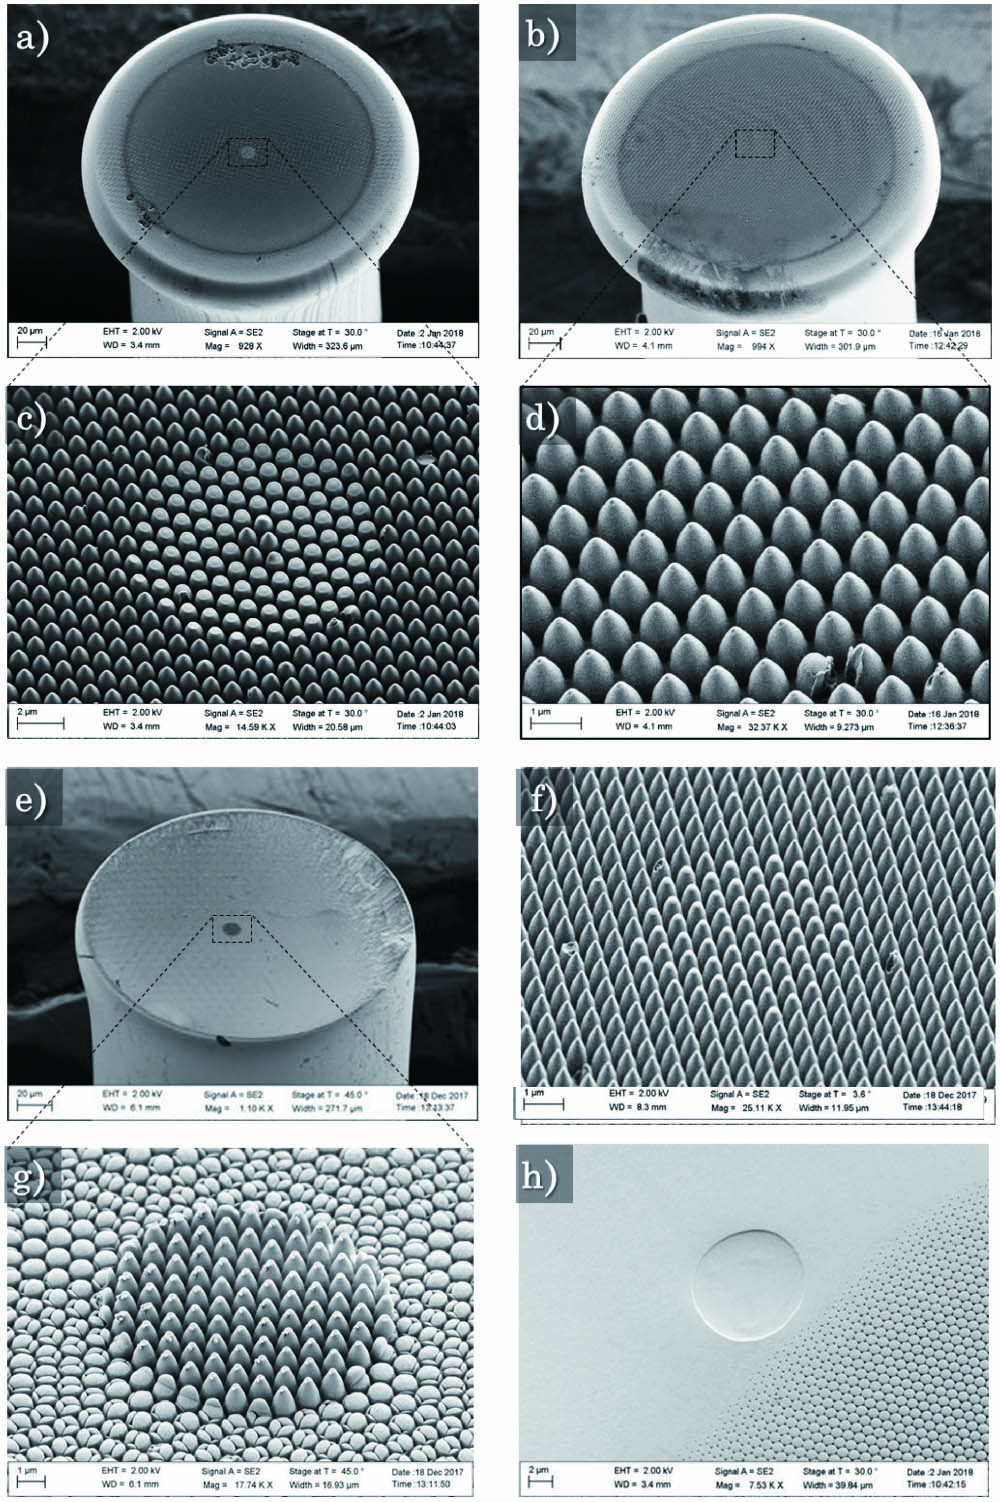 SEM images of imprinted (a), (c), (h) IRF-Se-12, (b), (d) IRF-Se-100, (e), (g) NOTT-11, and (f) IRF-SeG-12 optical fibers.